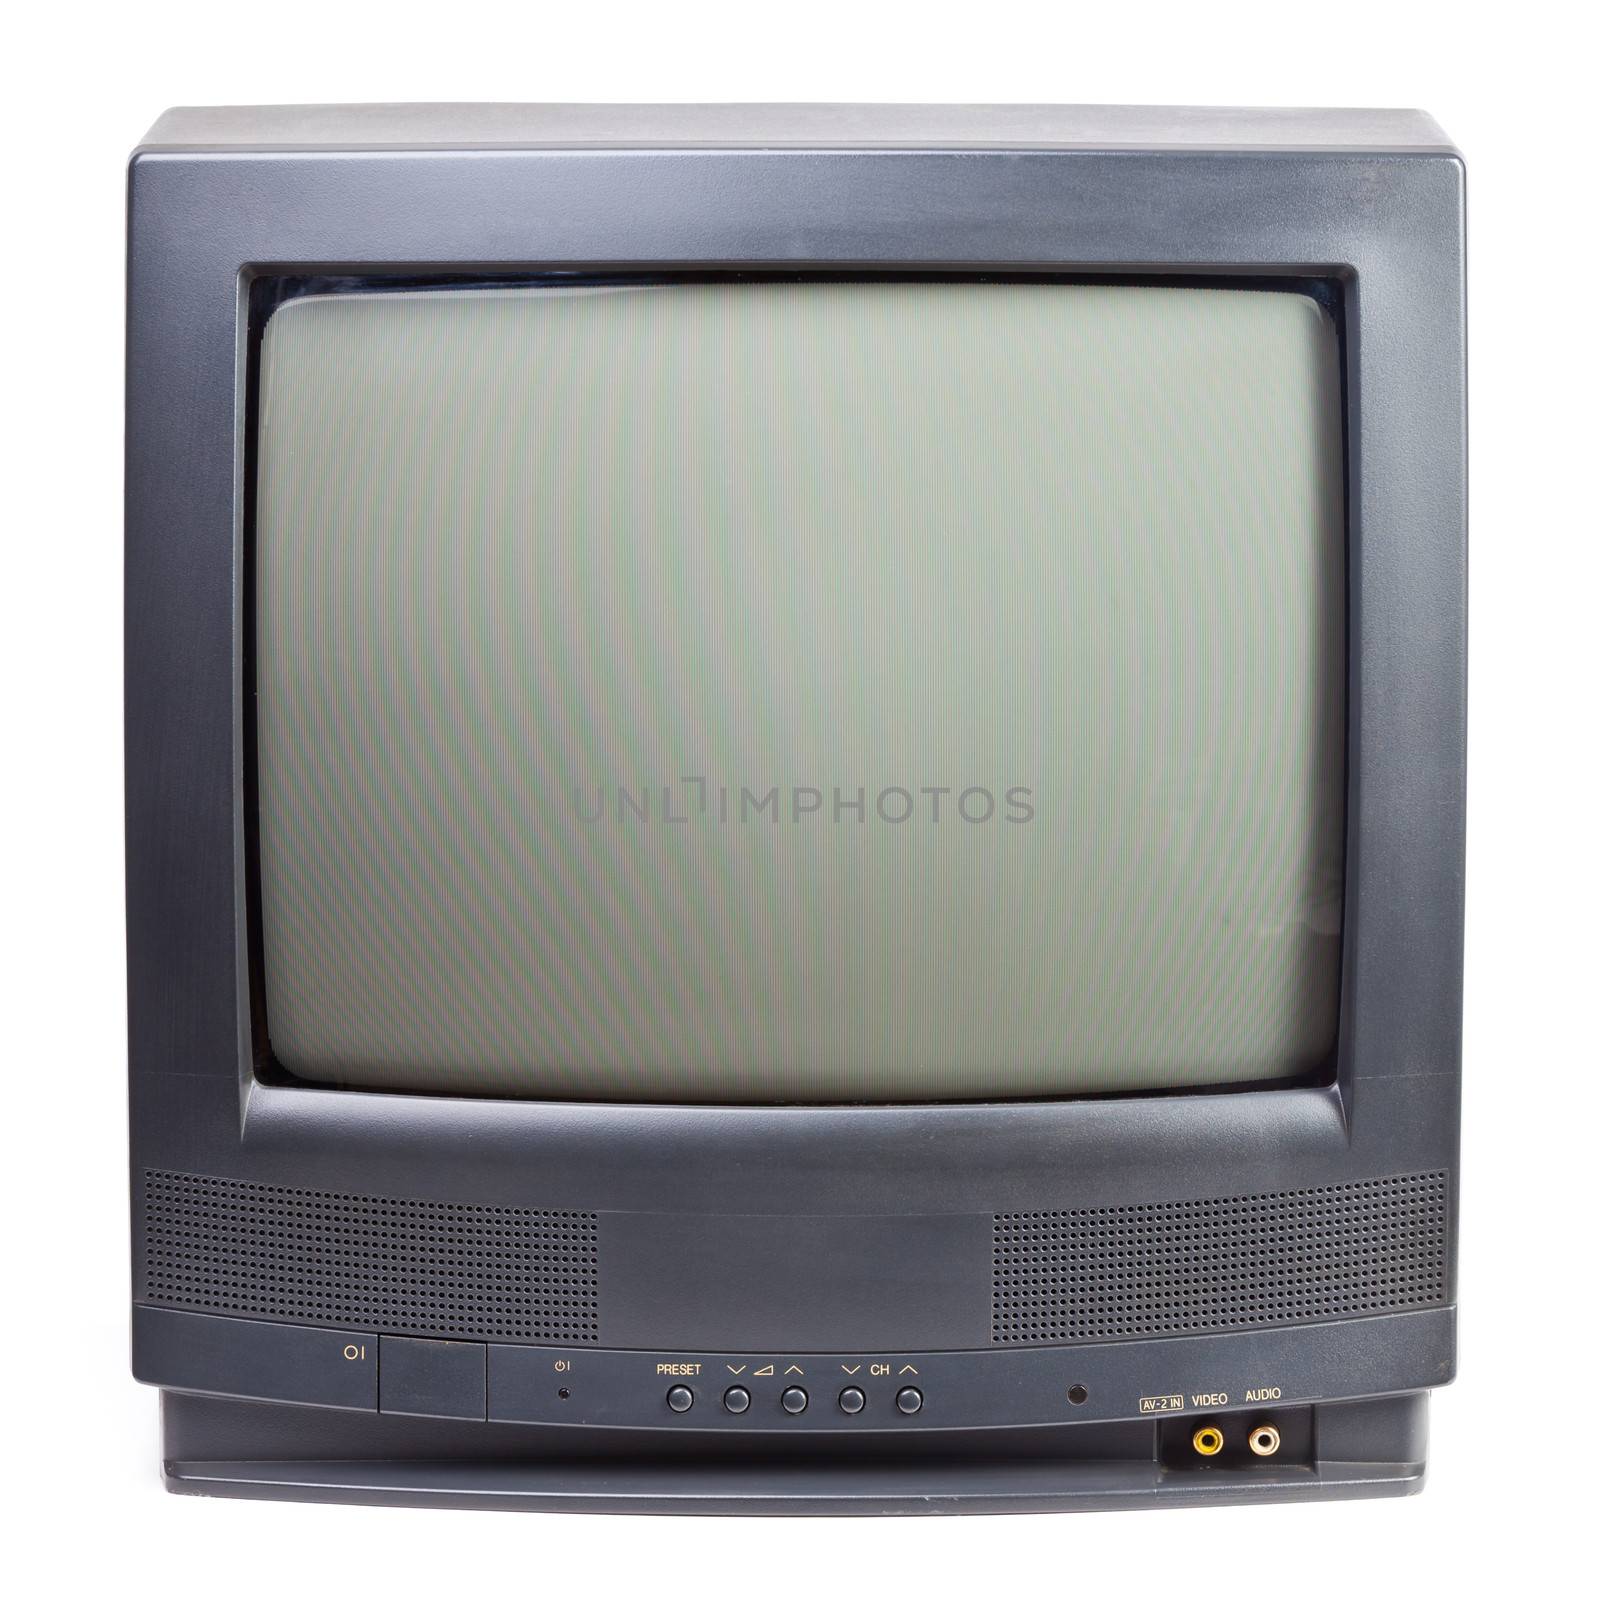 Vintage TV set by naumoid